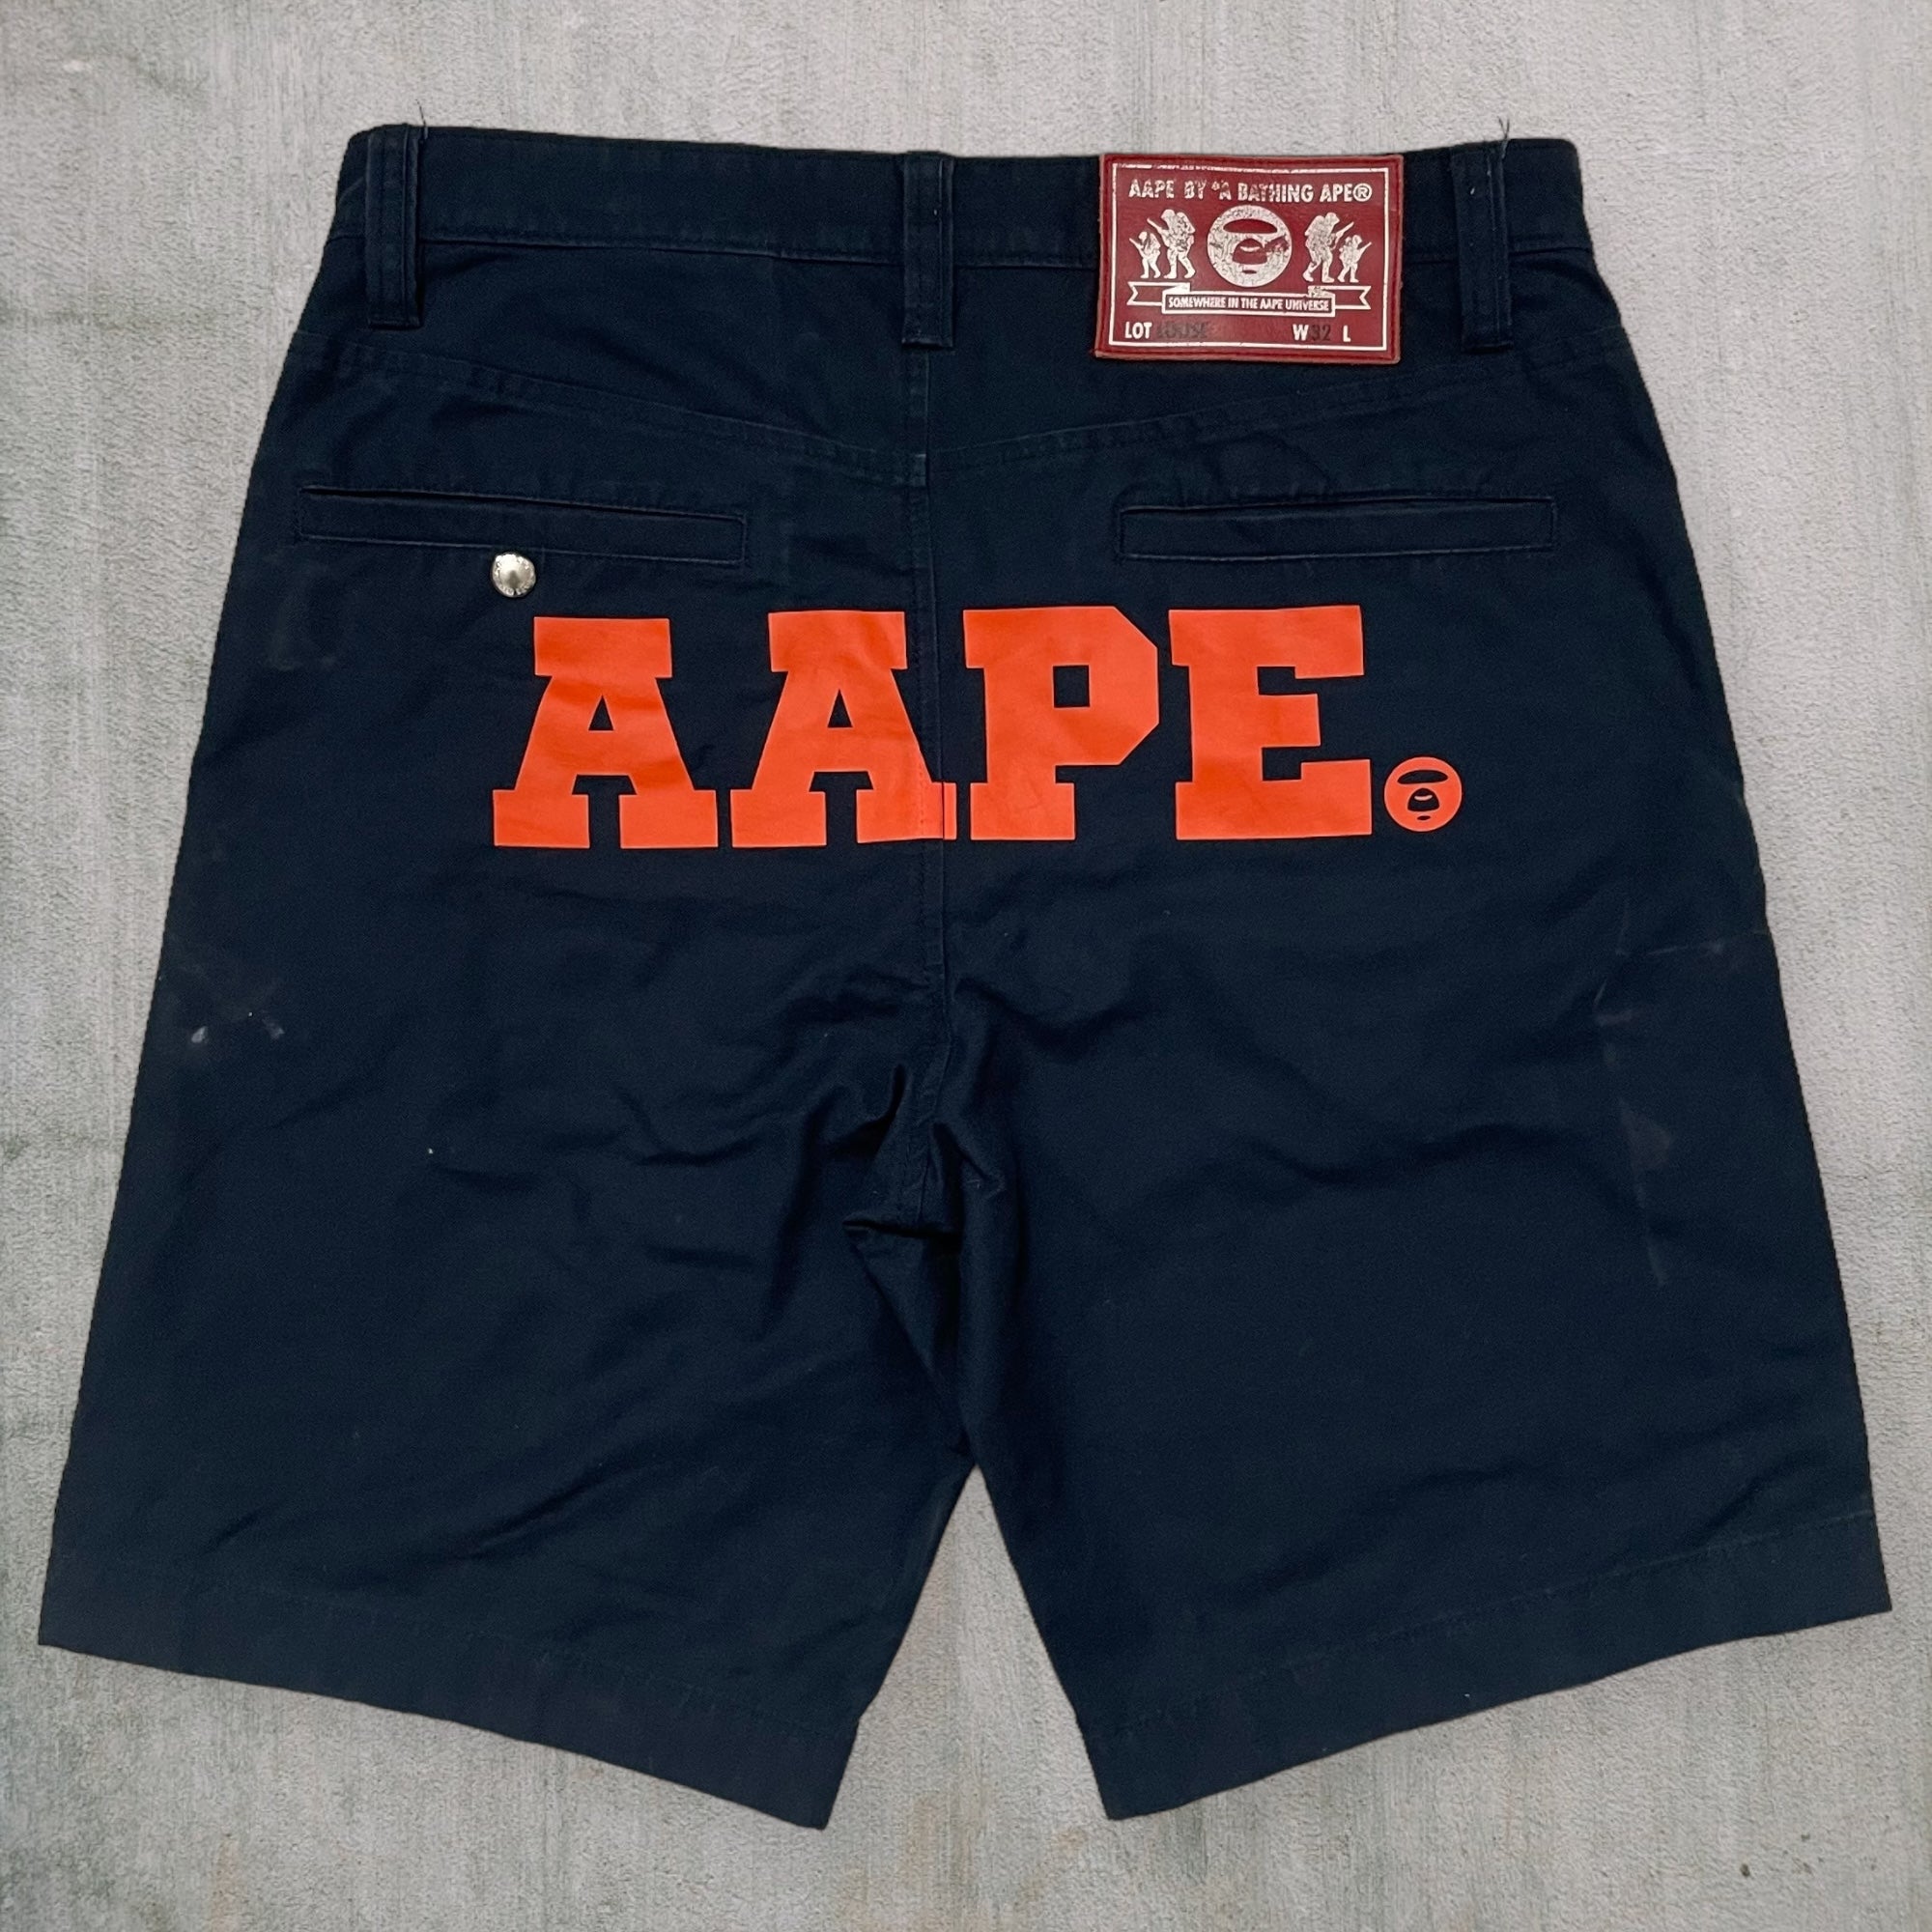 BAPE AAPE shorts